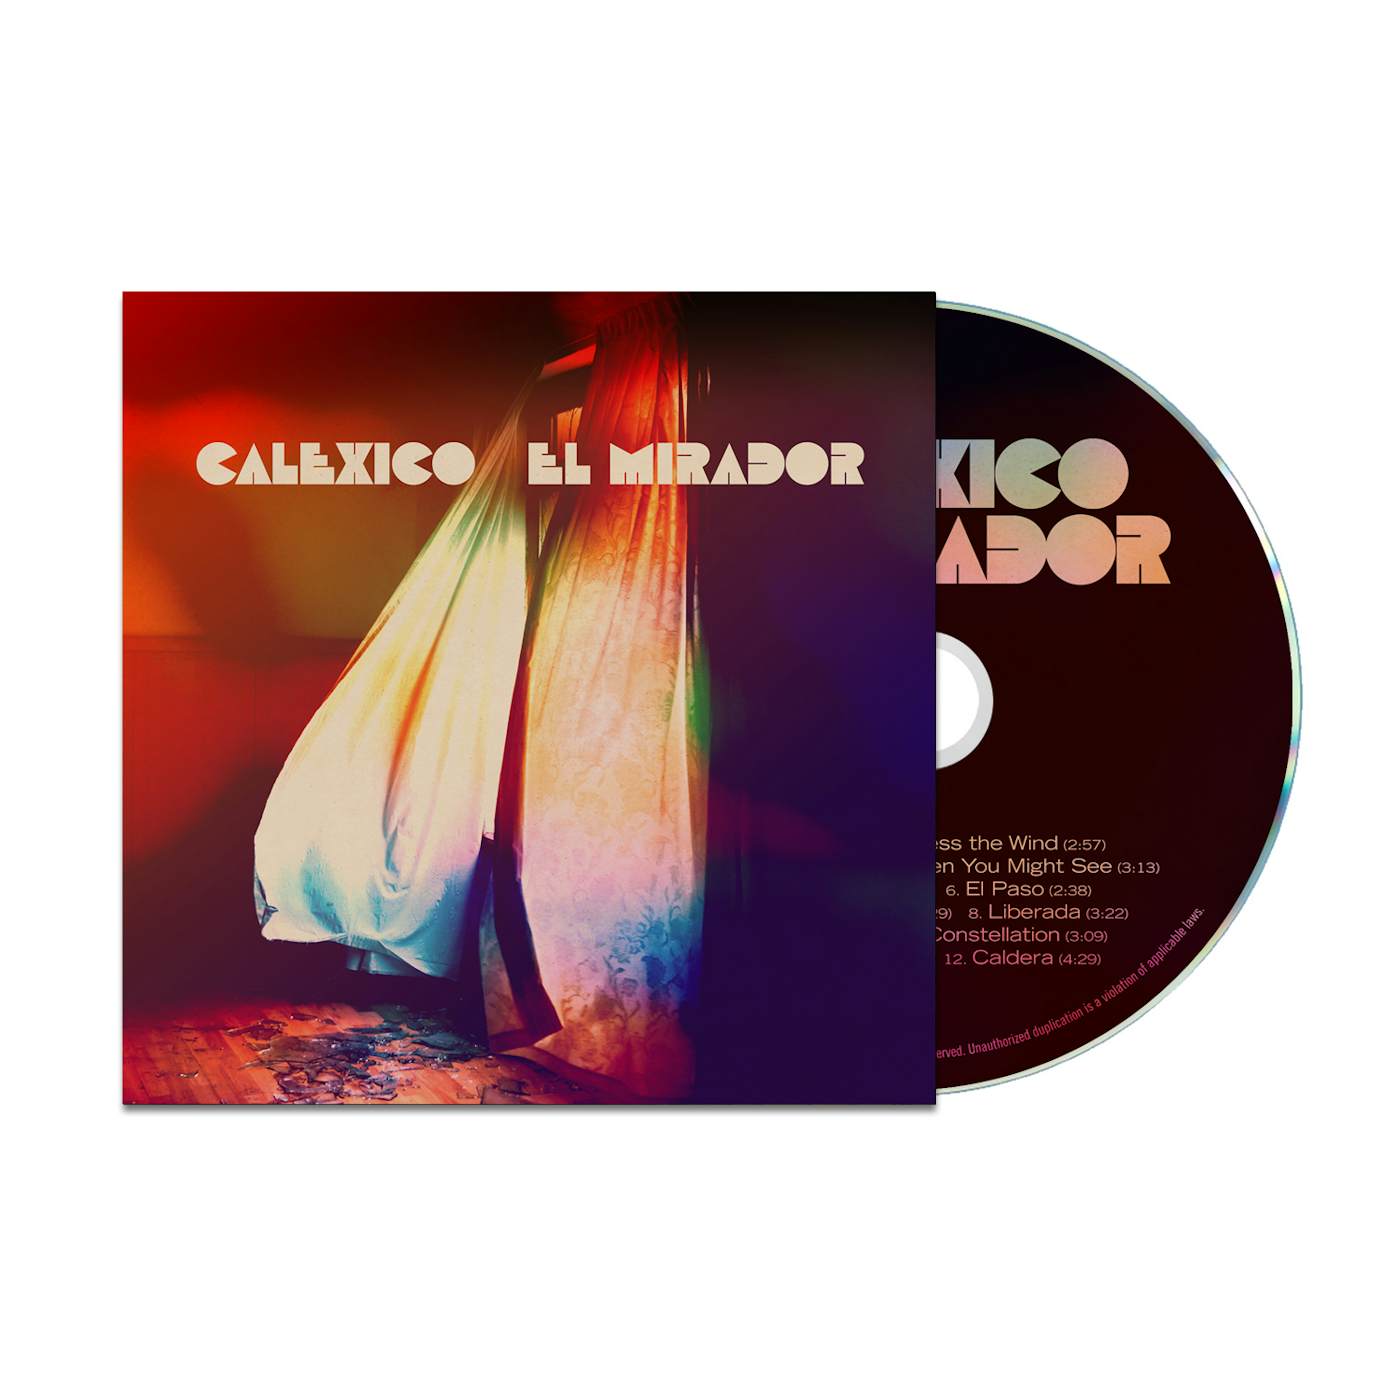 Calexico "El Mirador" CD